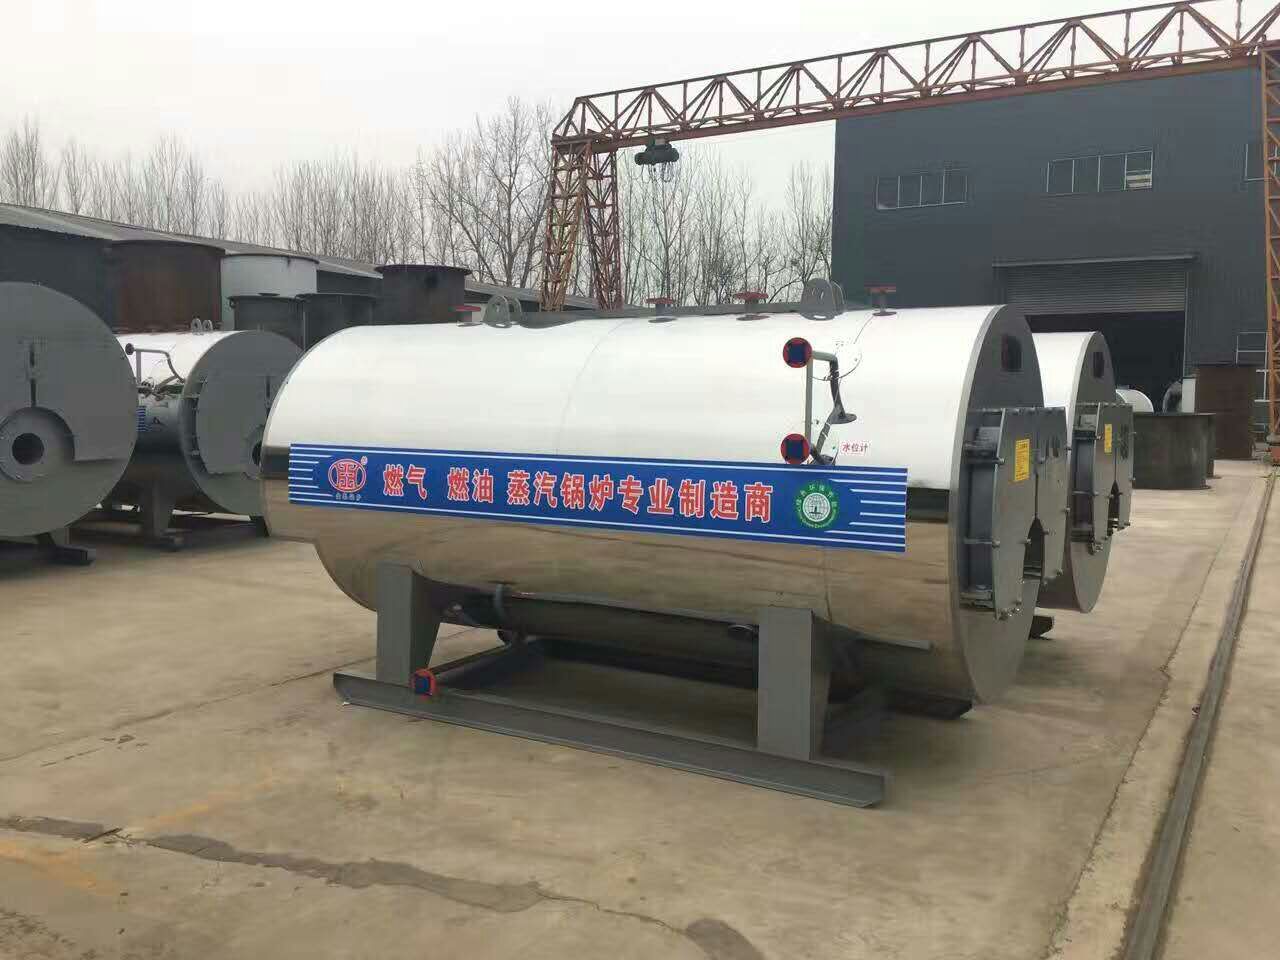 北京兩噸燃氣模塊蒸汽鍋爐型號參數